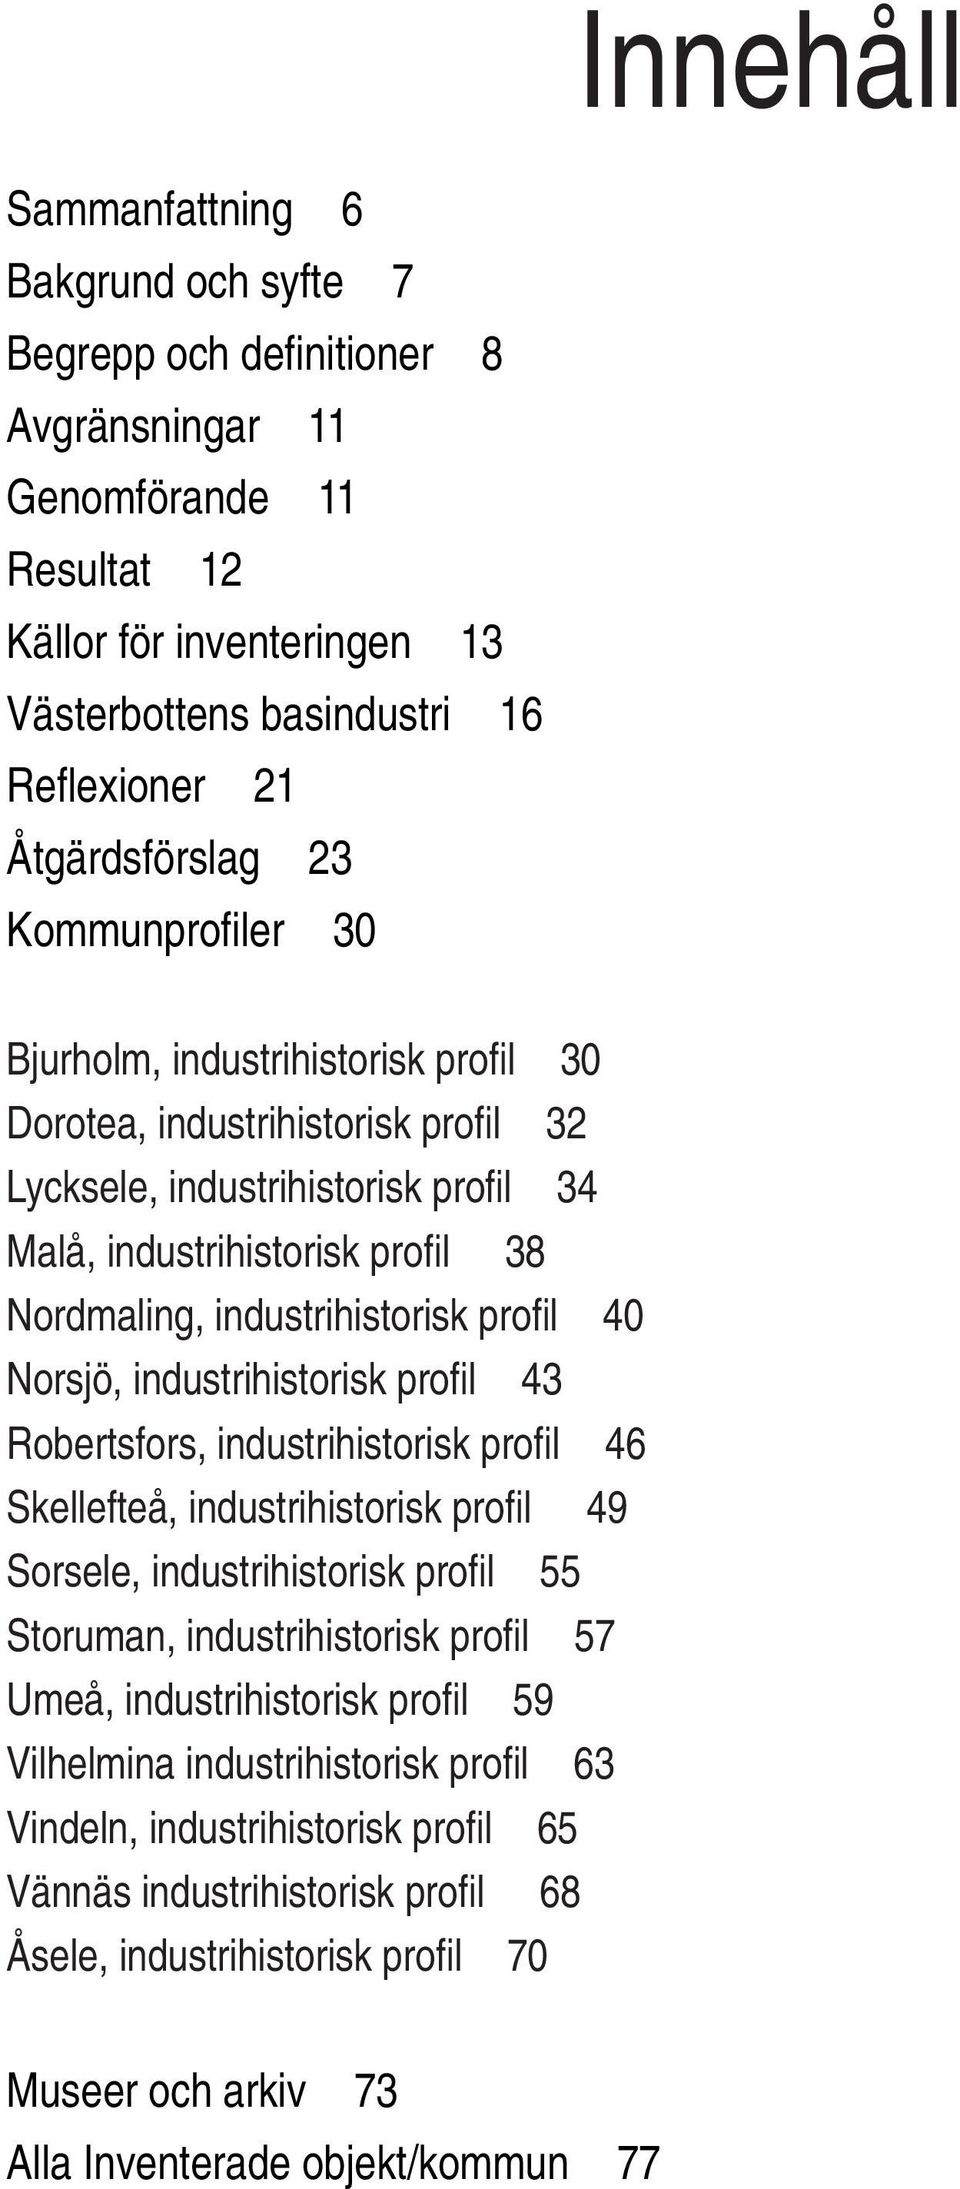 industrihistorisk profi l 40 Norsjö, industrihistorisk profi l 43 Robertsfors, industrihistorisk profi l 46 Skellefteå, industrihistorisk profi l 49 Sorsele, industrihistorisk profi l 55 Storuman,